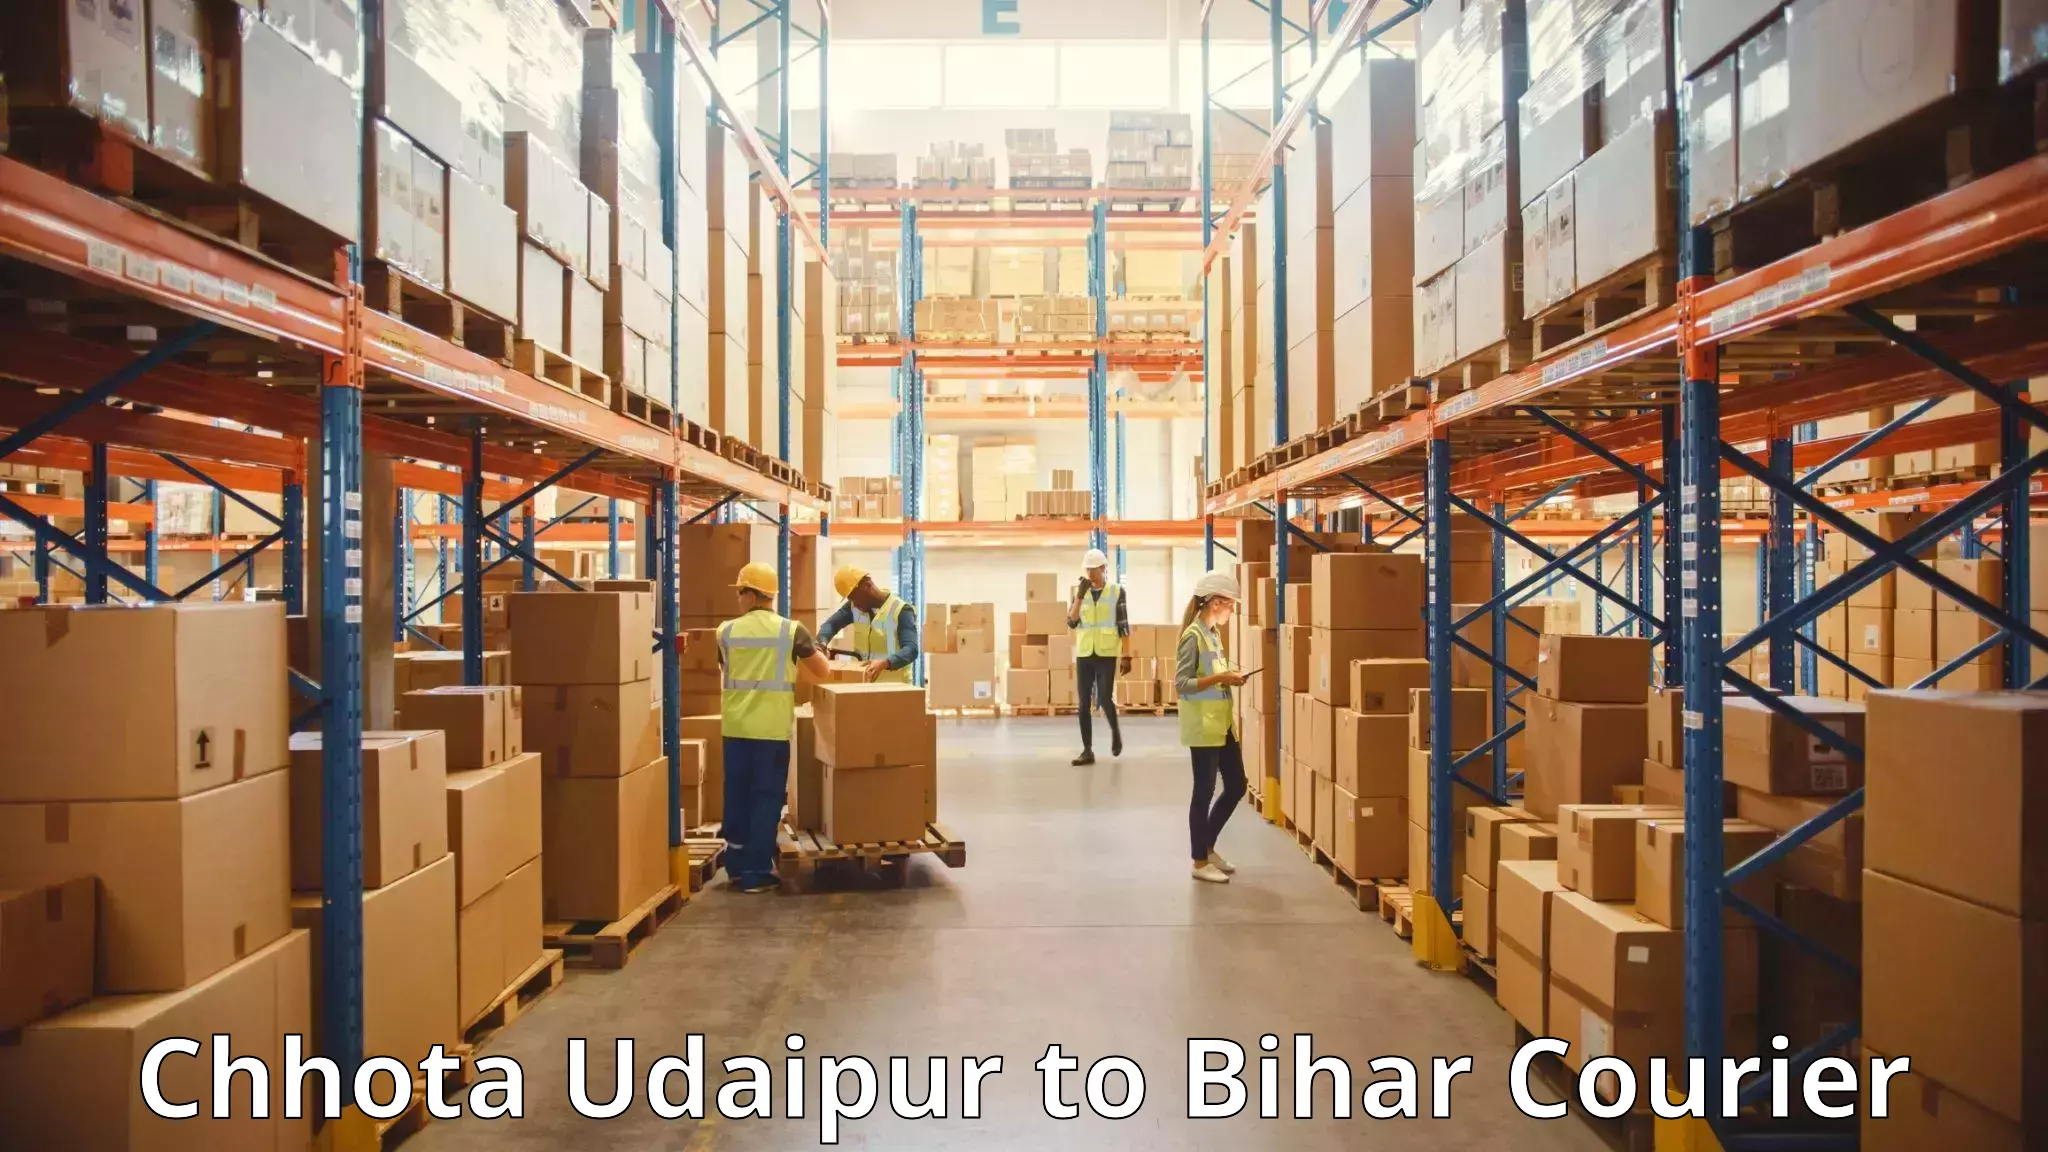 Reliable luggage courier Chhota Udaipur to Barhiya